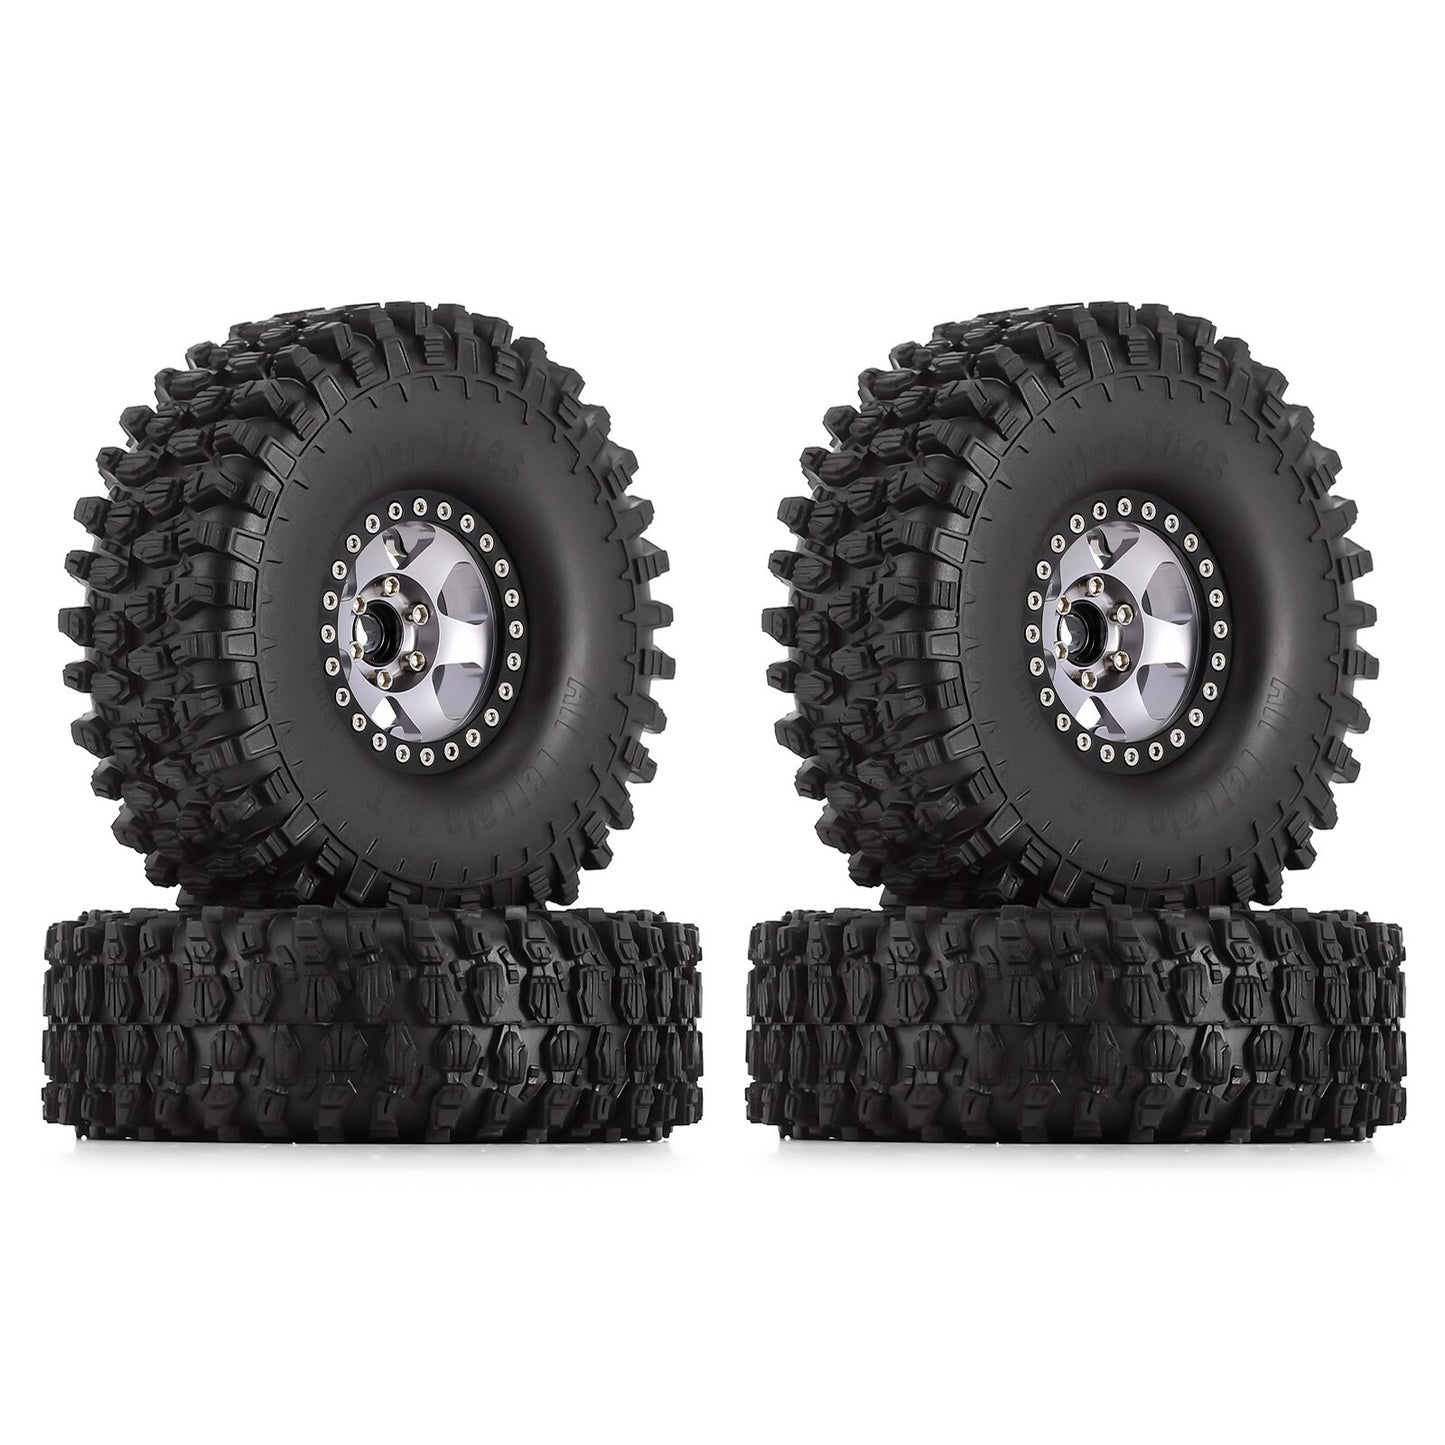 INJORA 4PCS 120*42mm 1.9" Wheel Rims Tires Set for 1:10 RC Rock Crawler Car TRX4 Axial SCX10 90046 Redcat Gen8